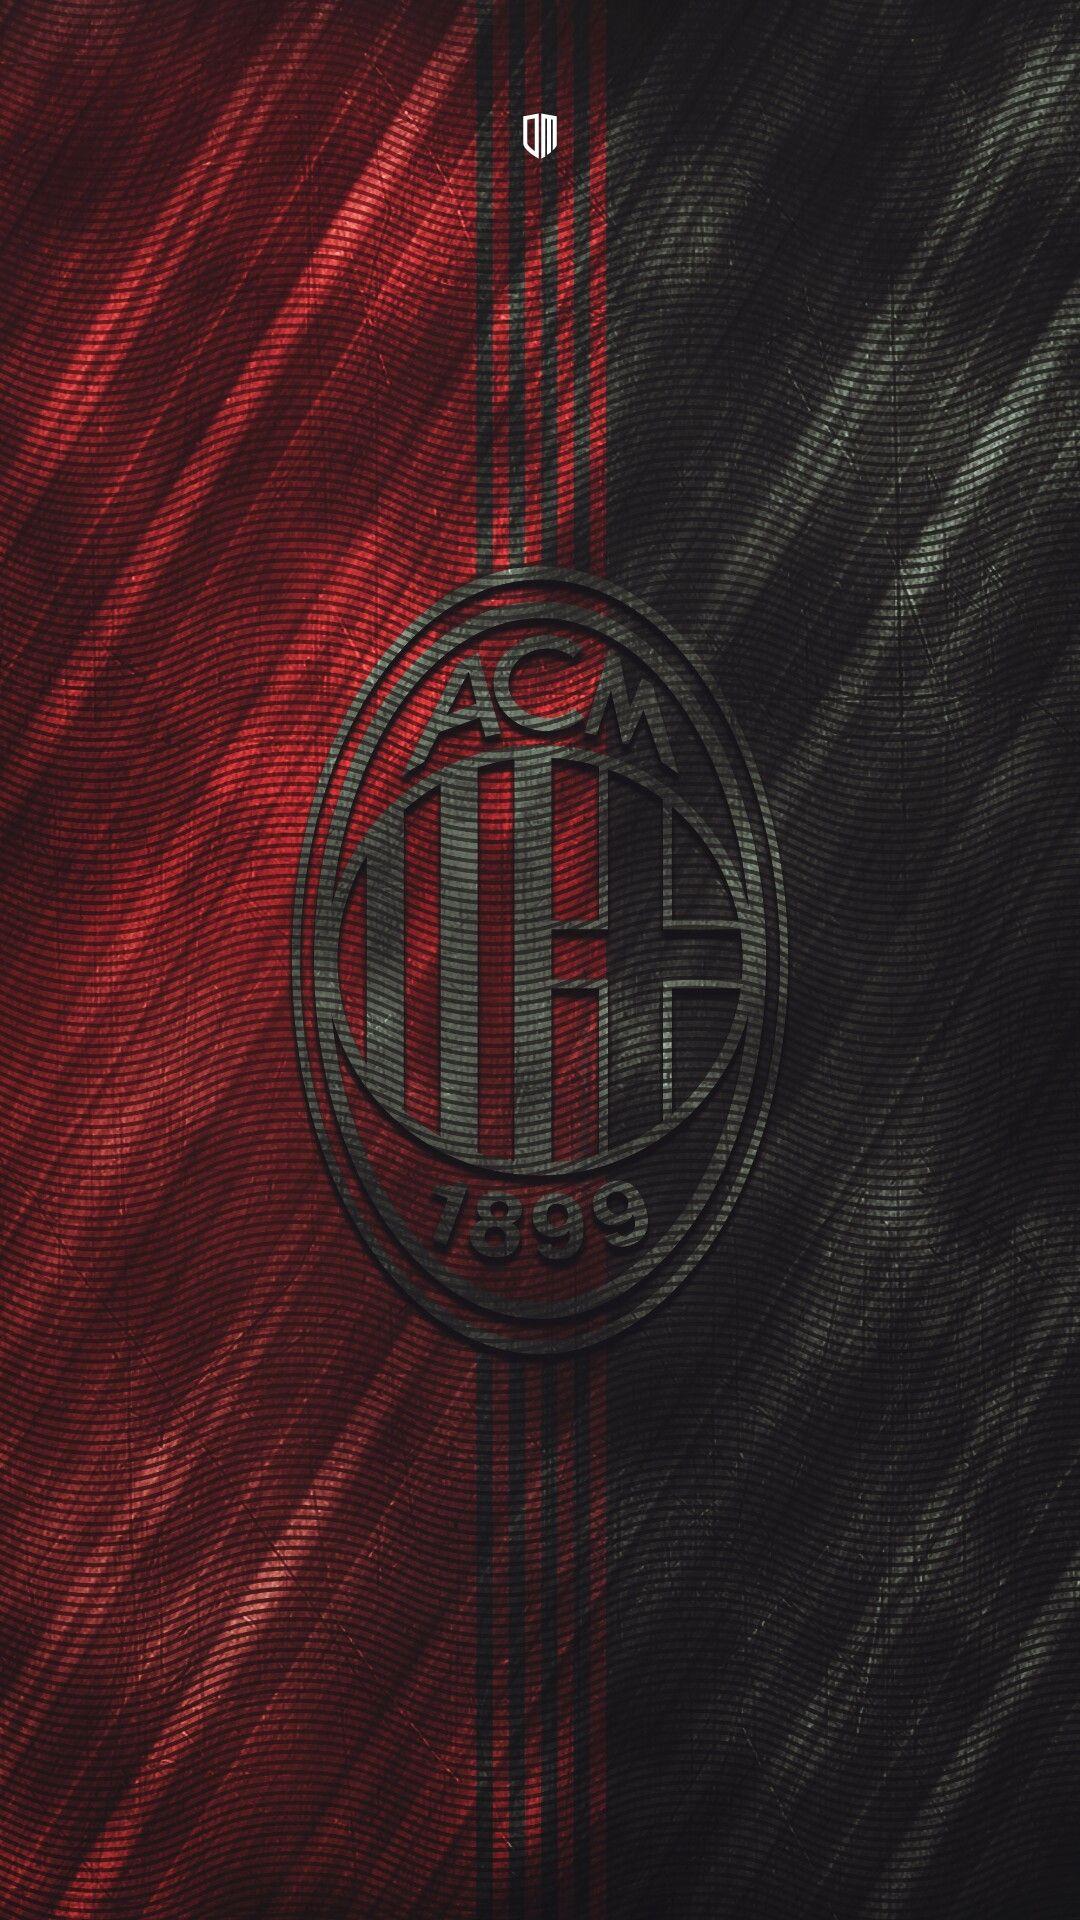 AC Milan Wallpaper. Forza Milan. Olahraga, Sepak bola, dan Desain